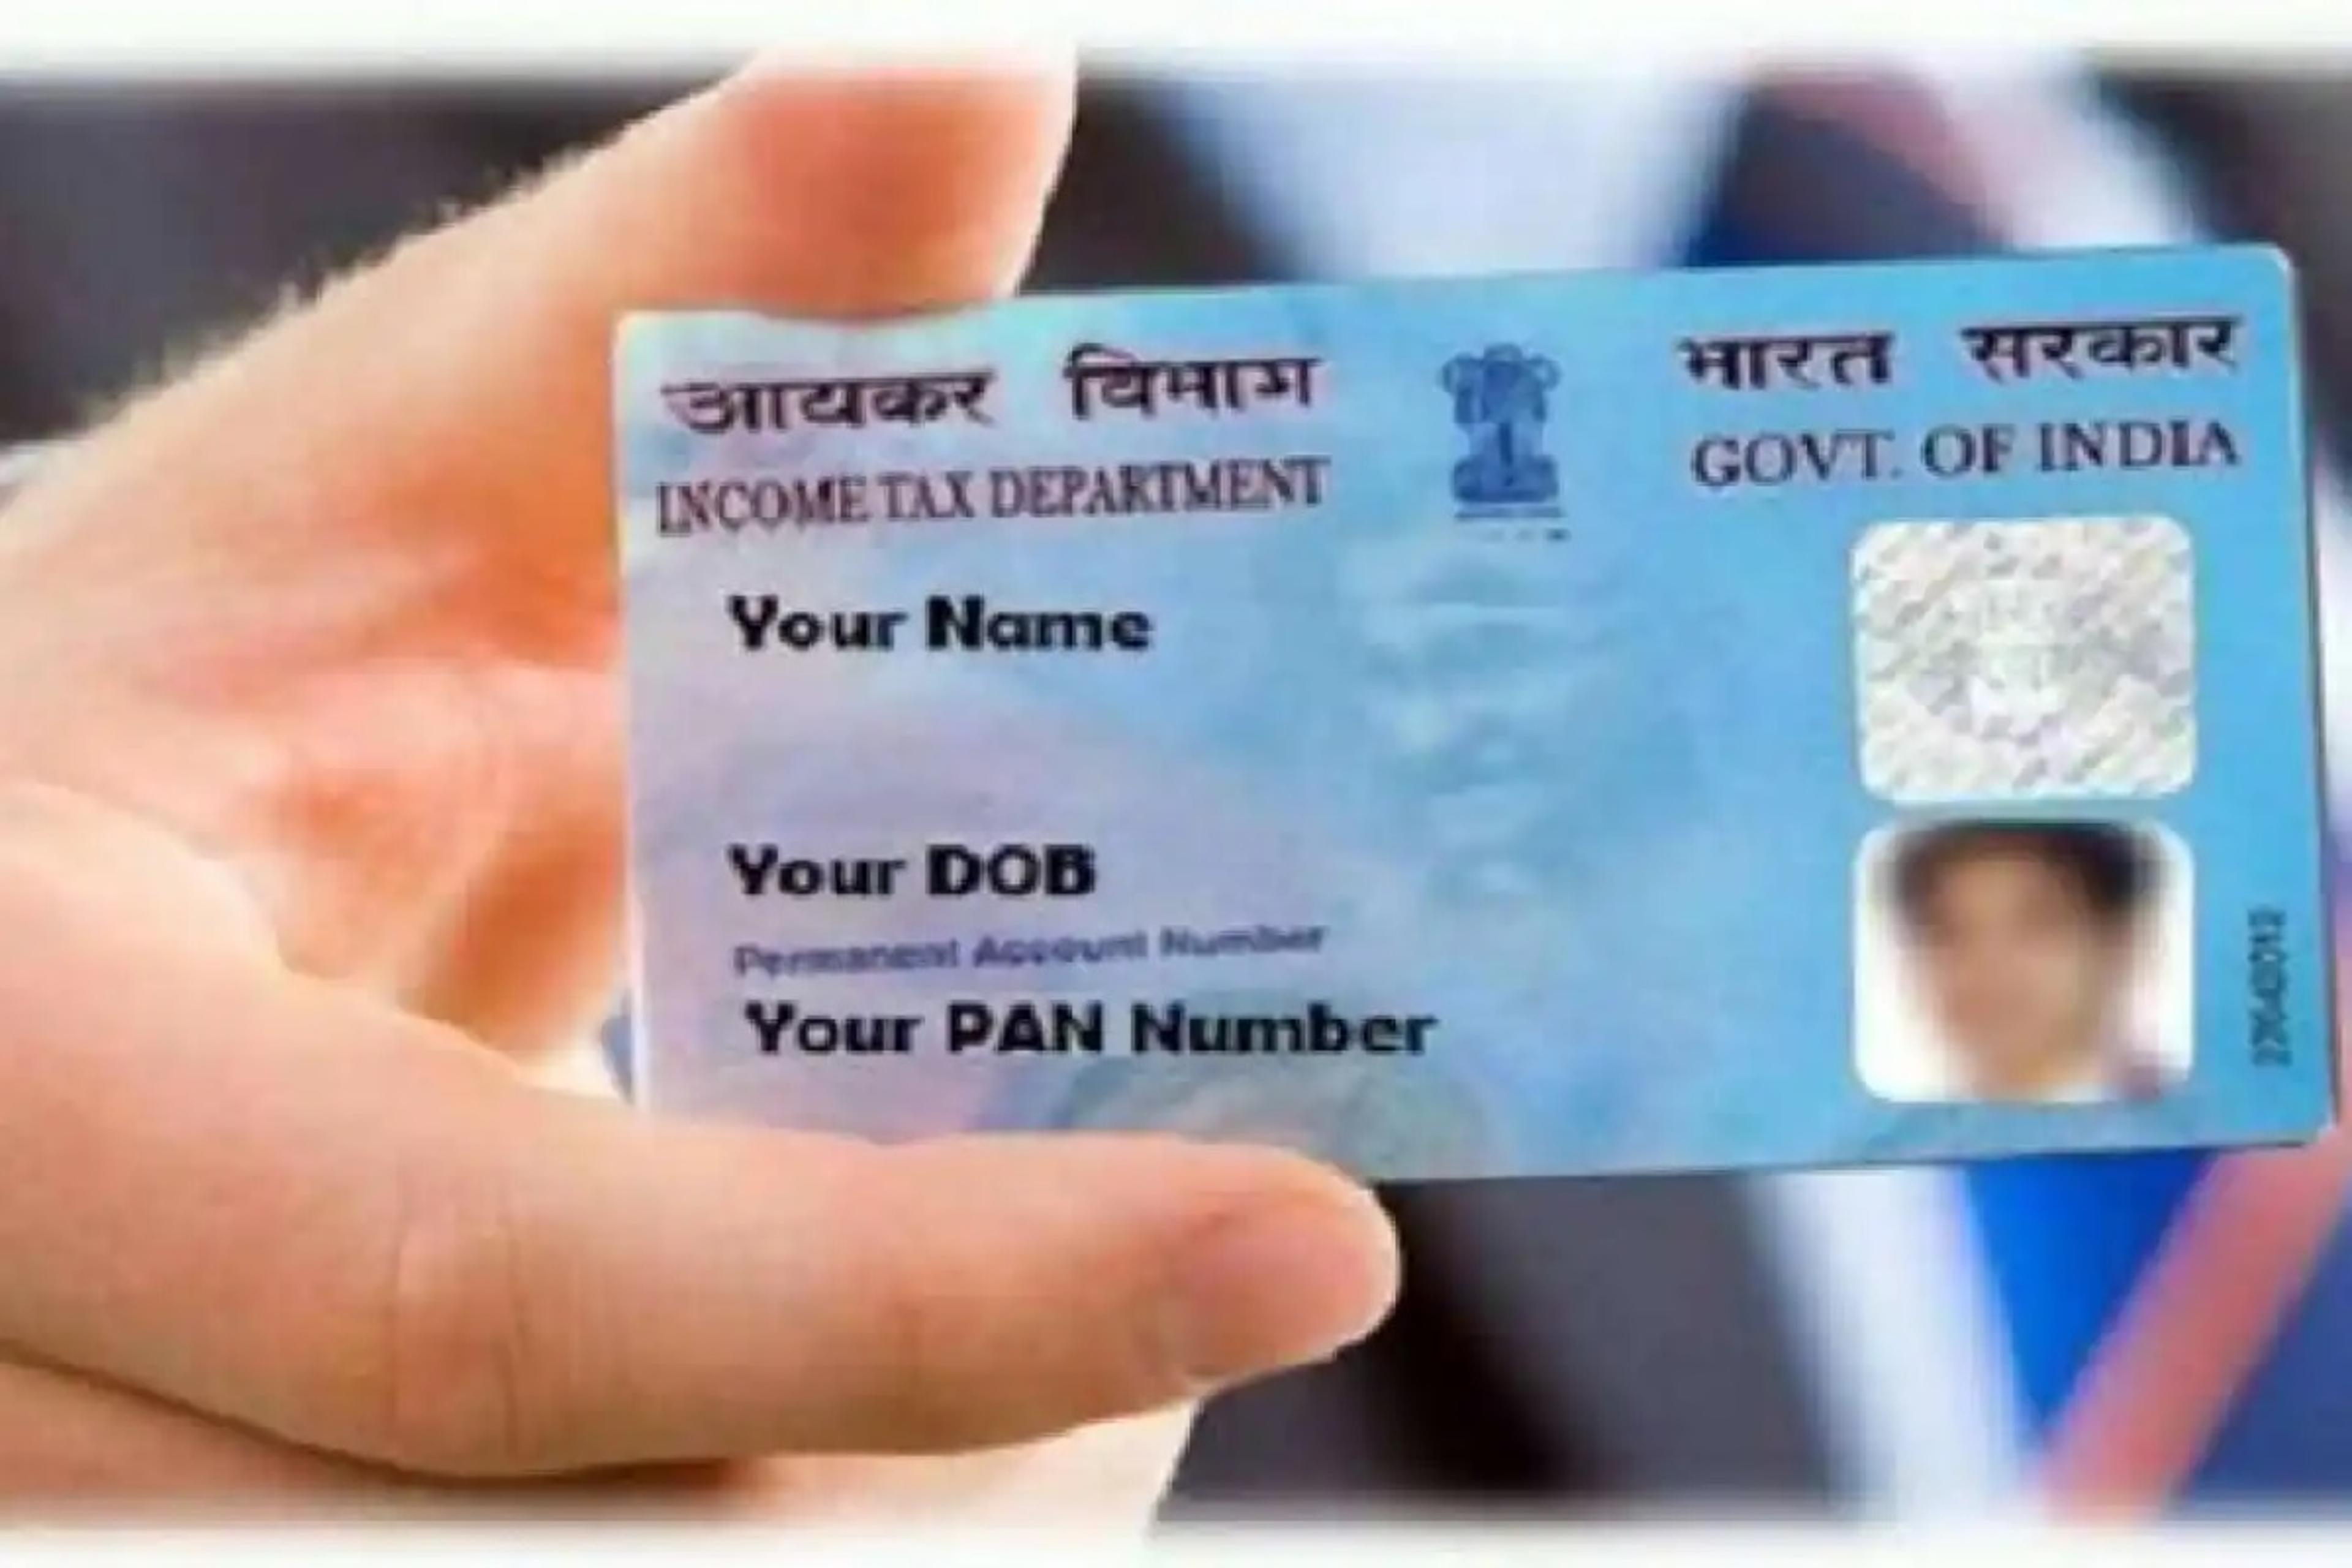 Pan Card: एक दिन का और है वक्त, 31 मार्च के पहले ज़रूर कर लीजिए ये काम, वरना डिऐक्टीवेट हो जाएगा पैन कार्ड